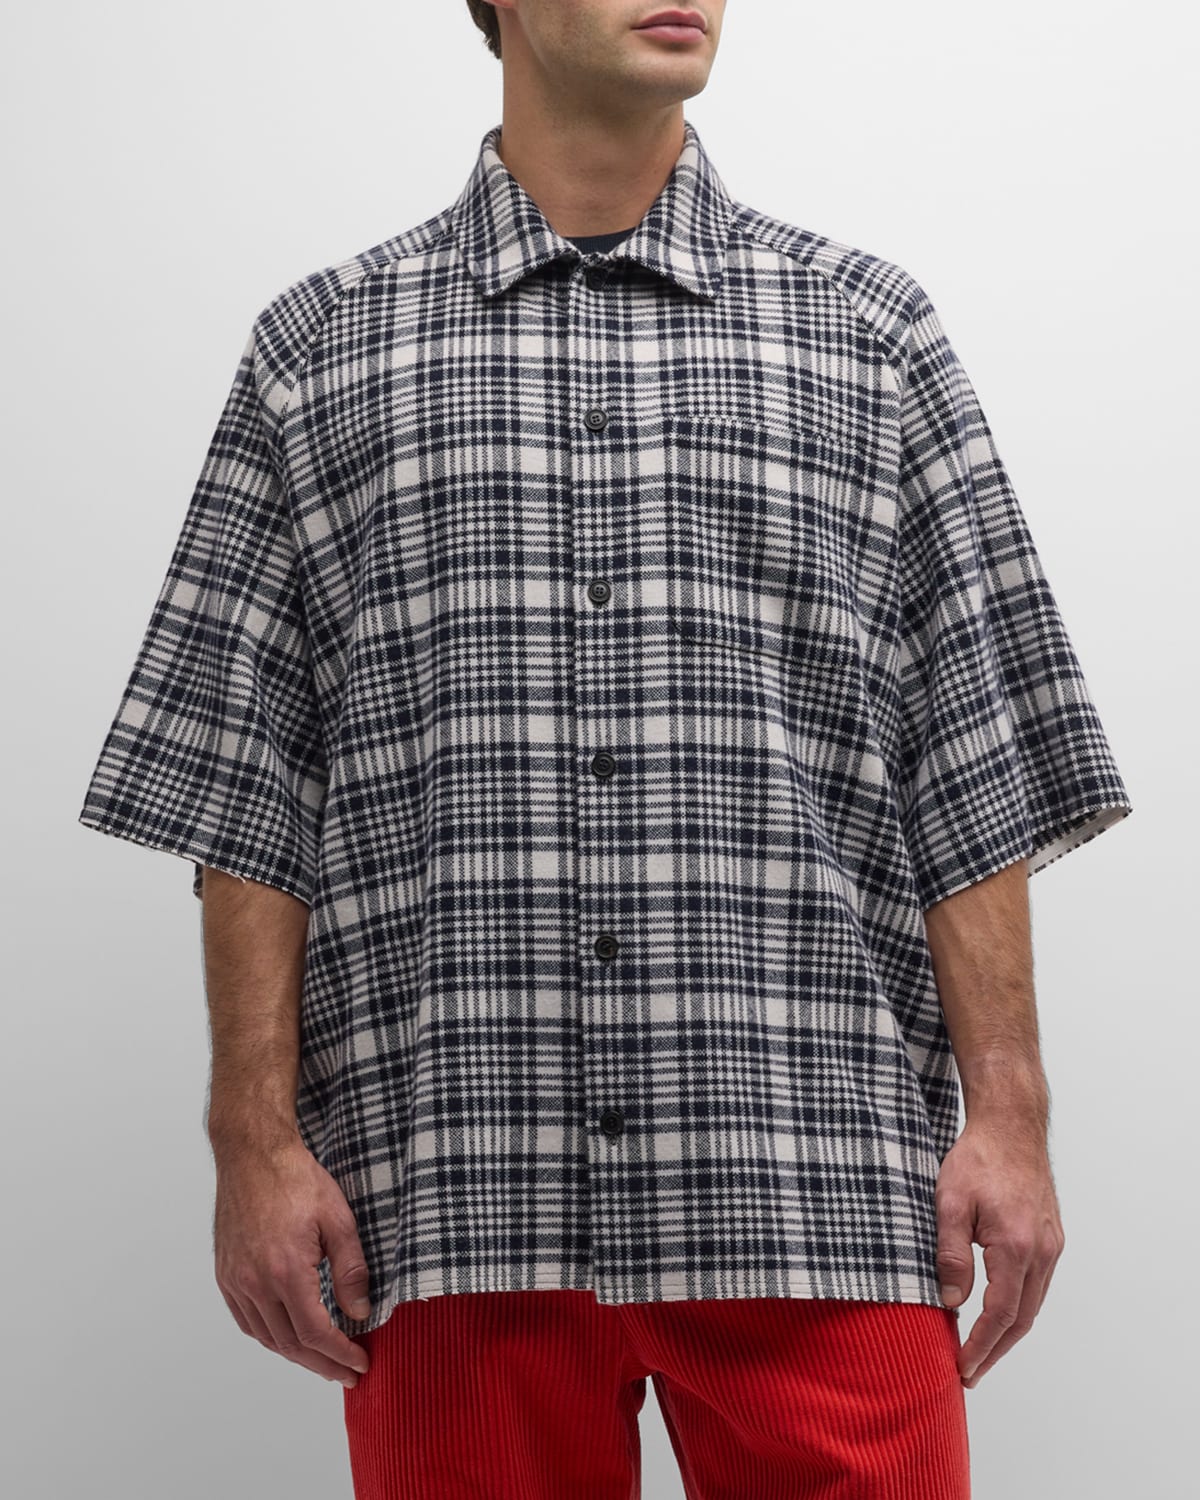 Men's Wool-Cashmere Plaid Button-Down Shirt